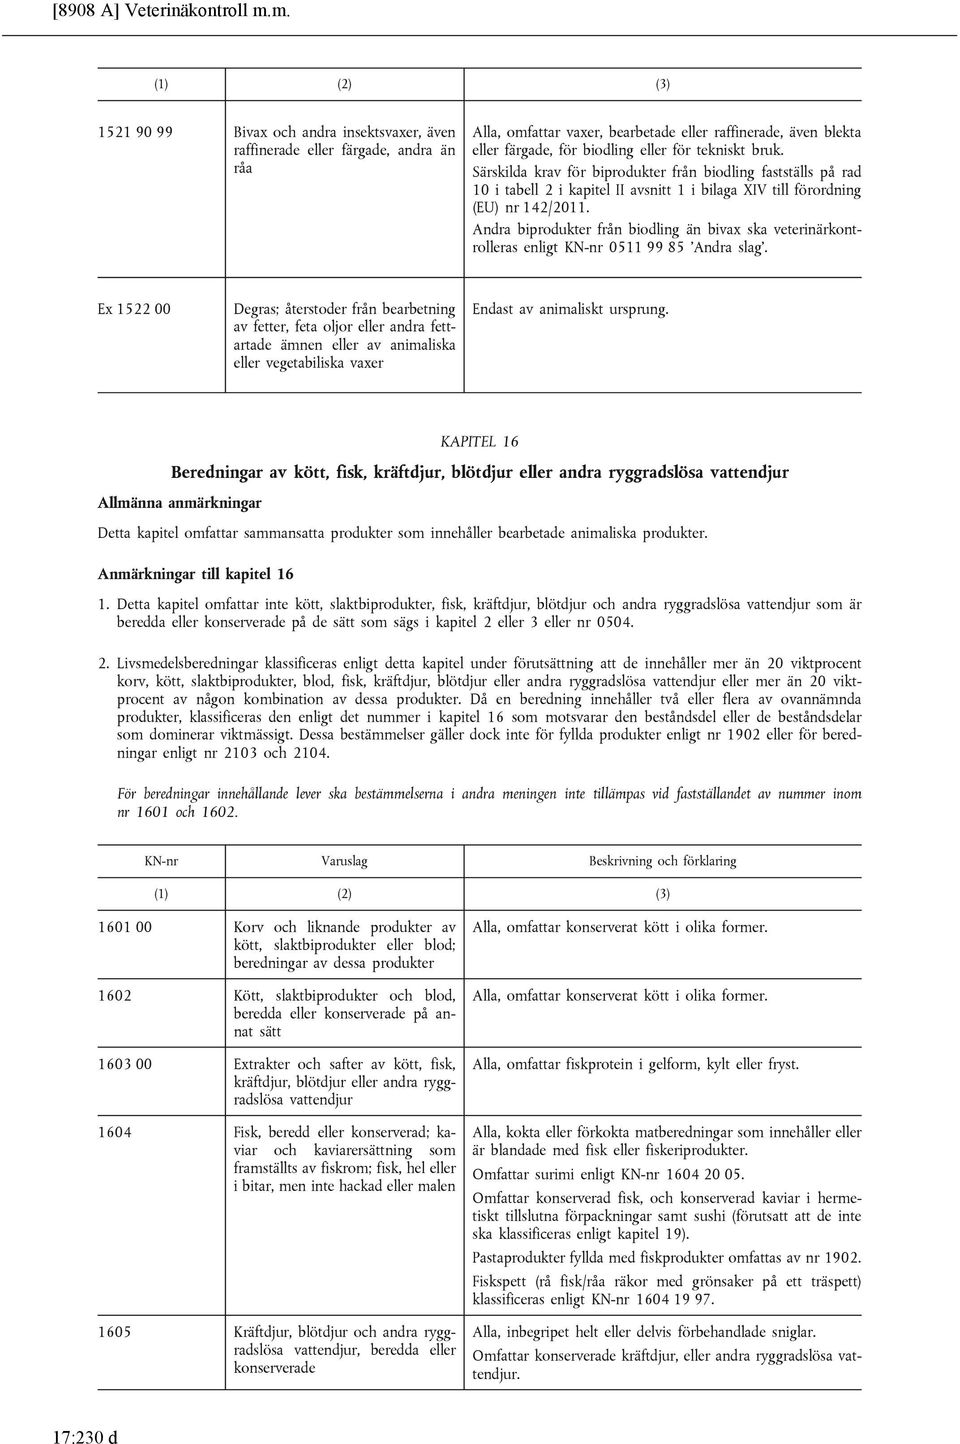 Särskilda krav för biprodukter från biodling fastställs på rad 10 i tabell 2 i kapitel II avsnitt 1 i bilaga XIV till förordning (EU) nr 142/2011.